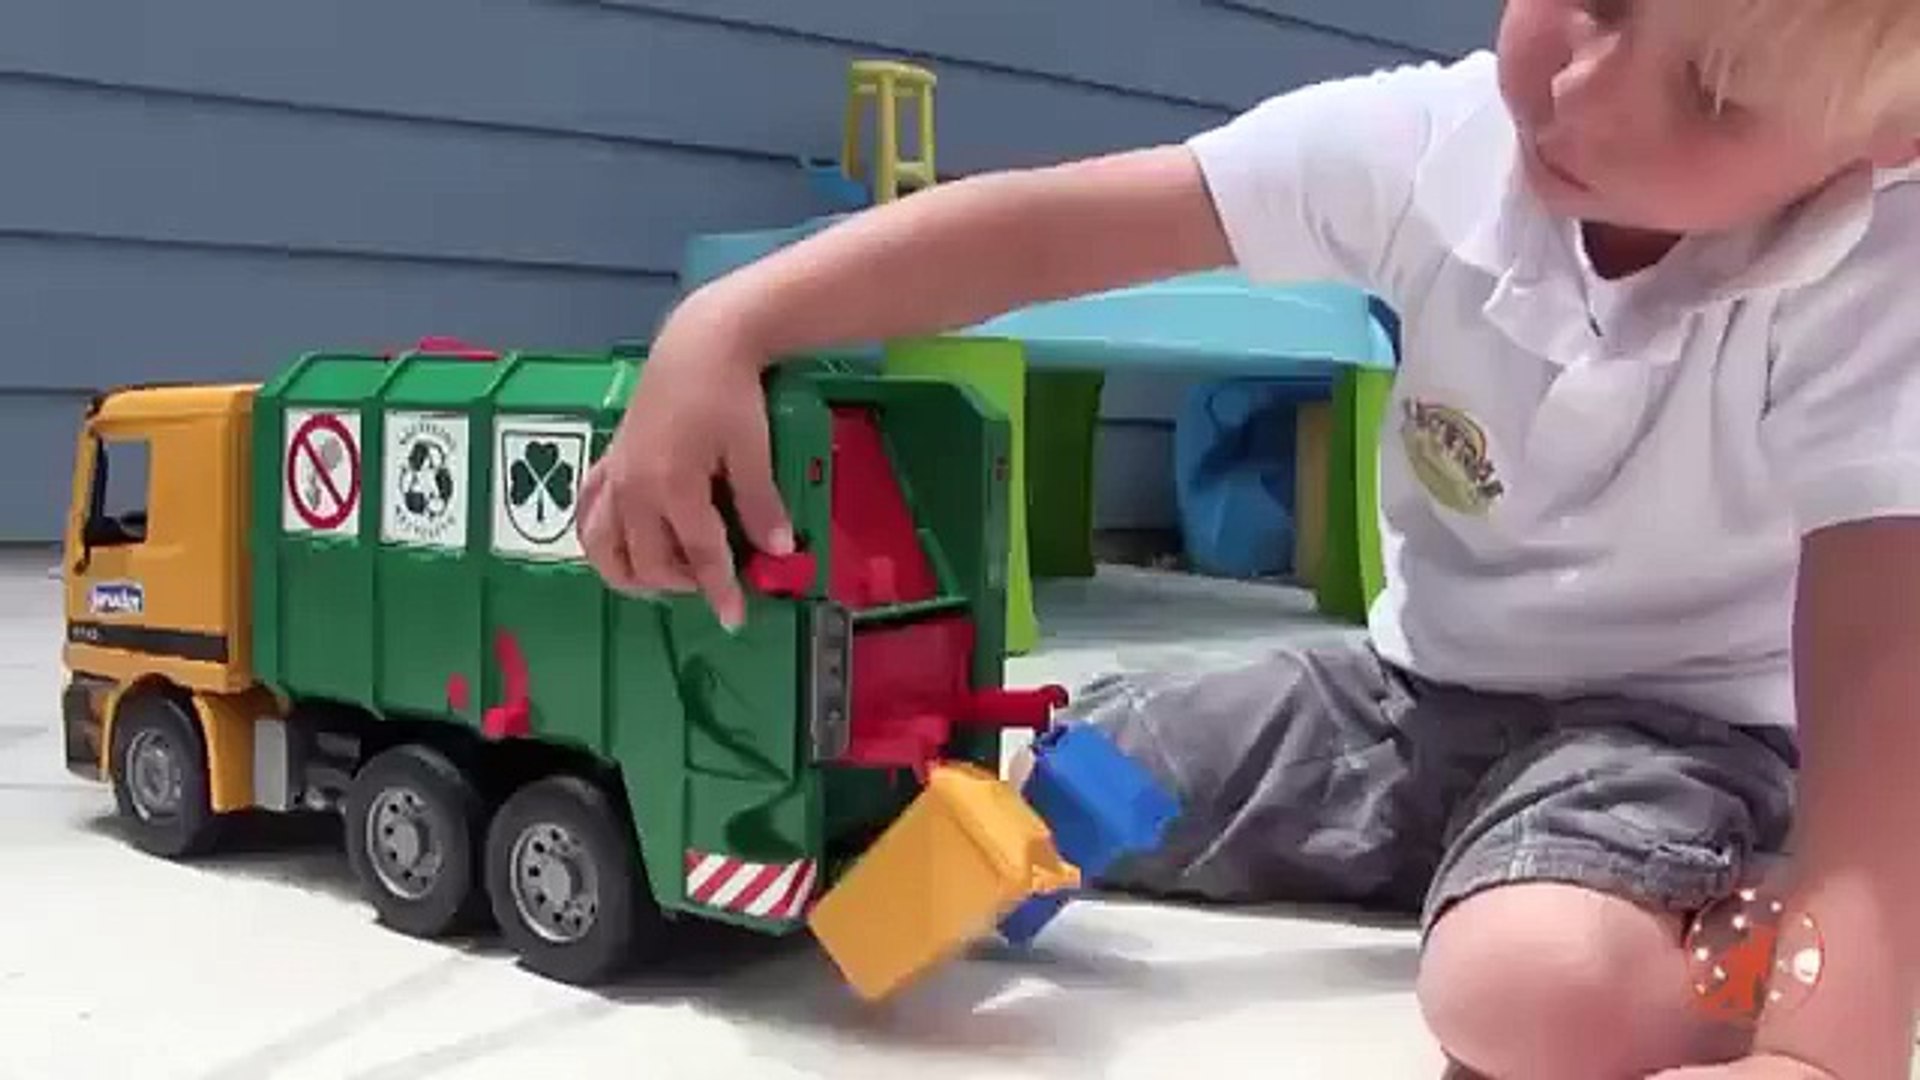 garbage truck toy videos